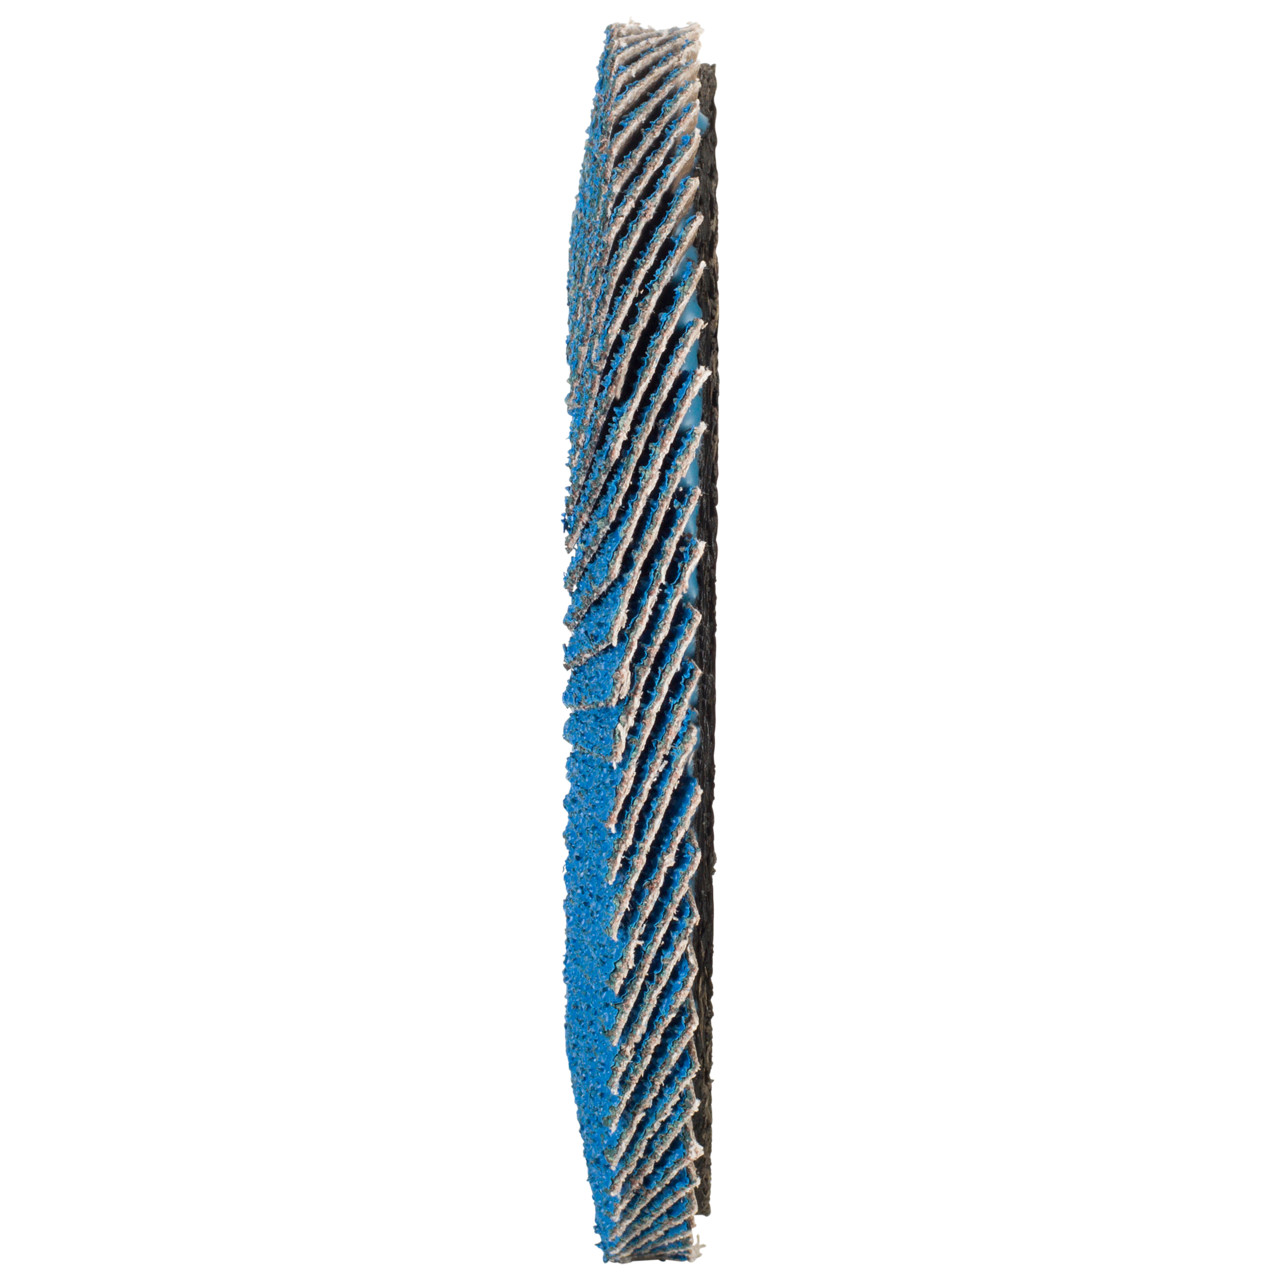 TYROLIT Fächerscheibe DxH 115x22,2 FASTCUT für Stahl & Edelstahl, P80, Form: 28N - gerade Ausführung (Kunststoffträgerkörper), Art. 458030